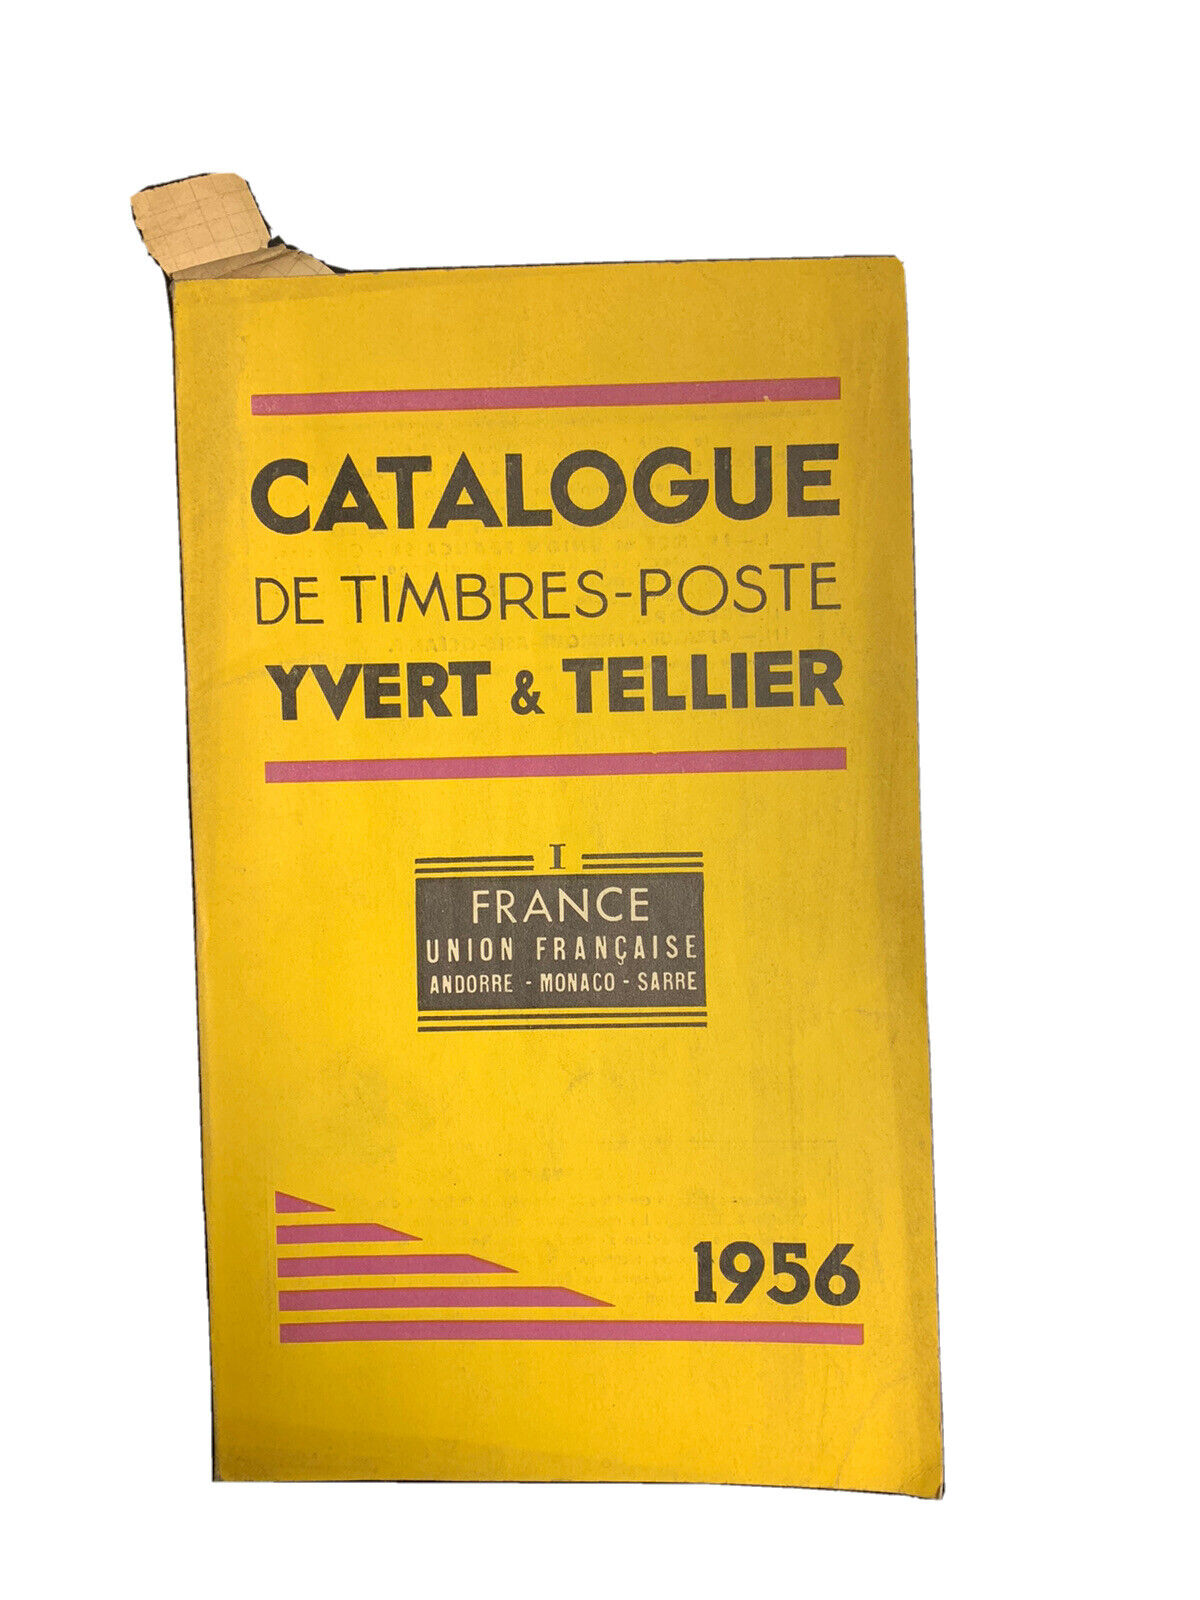 Catalogue De Timbres - Poste Vol.1 Yvert & Tellier